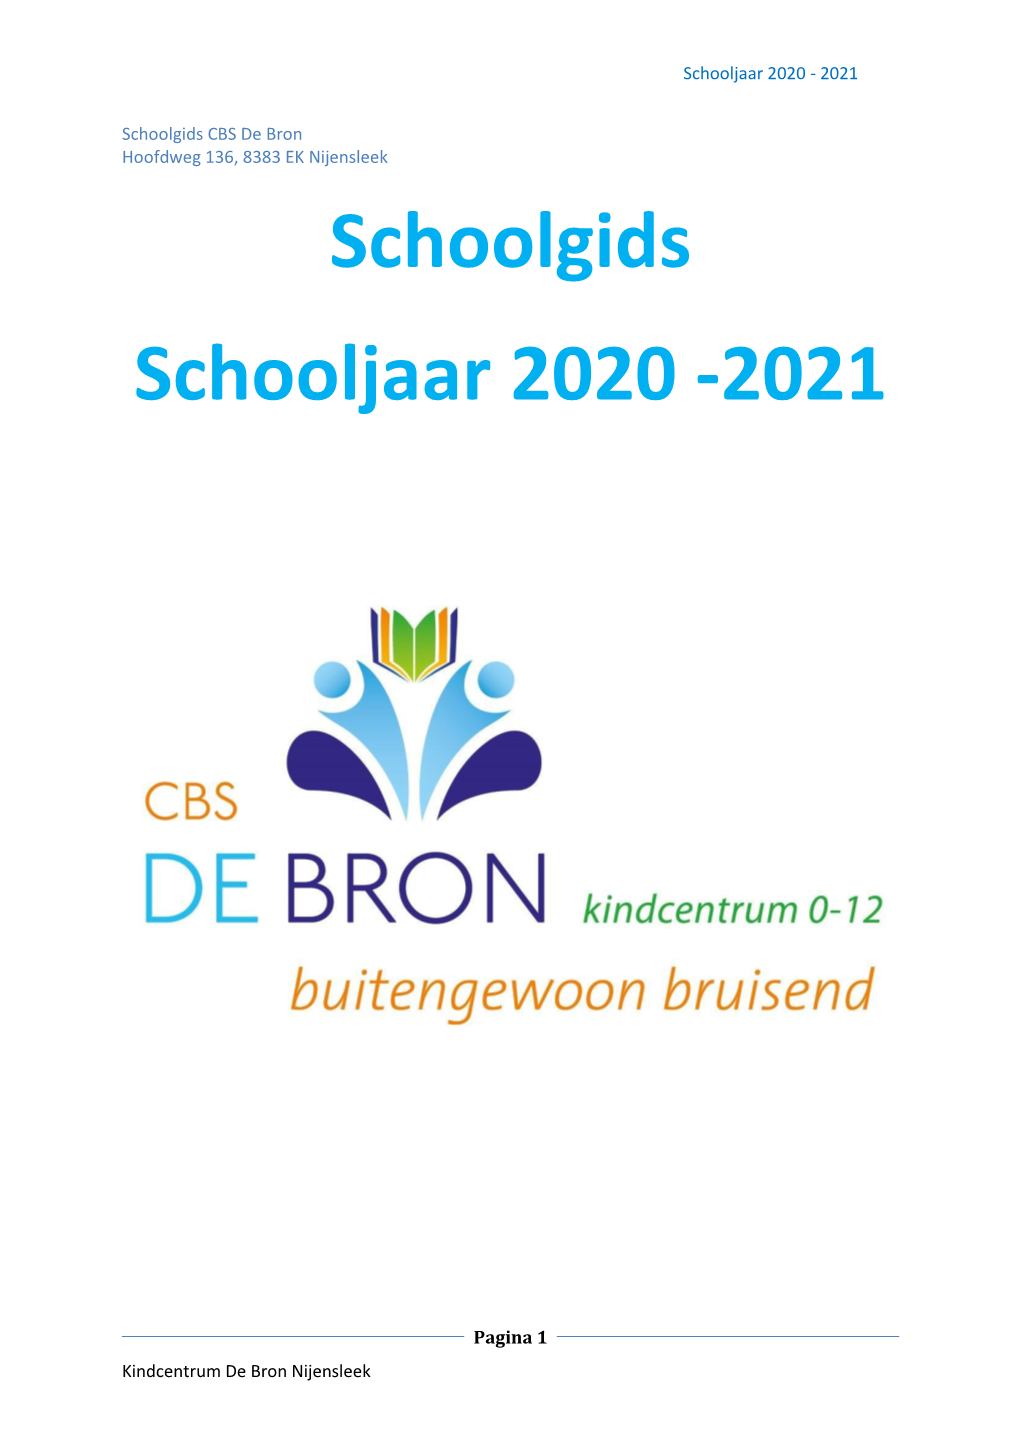 Schoolgids Schooljaar 2020 -2021